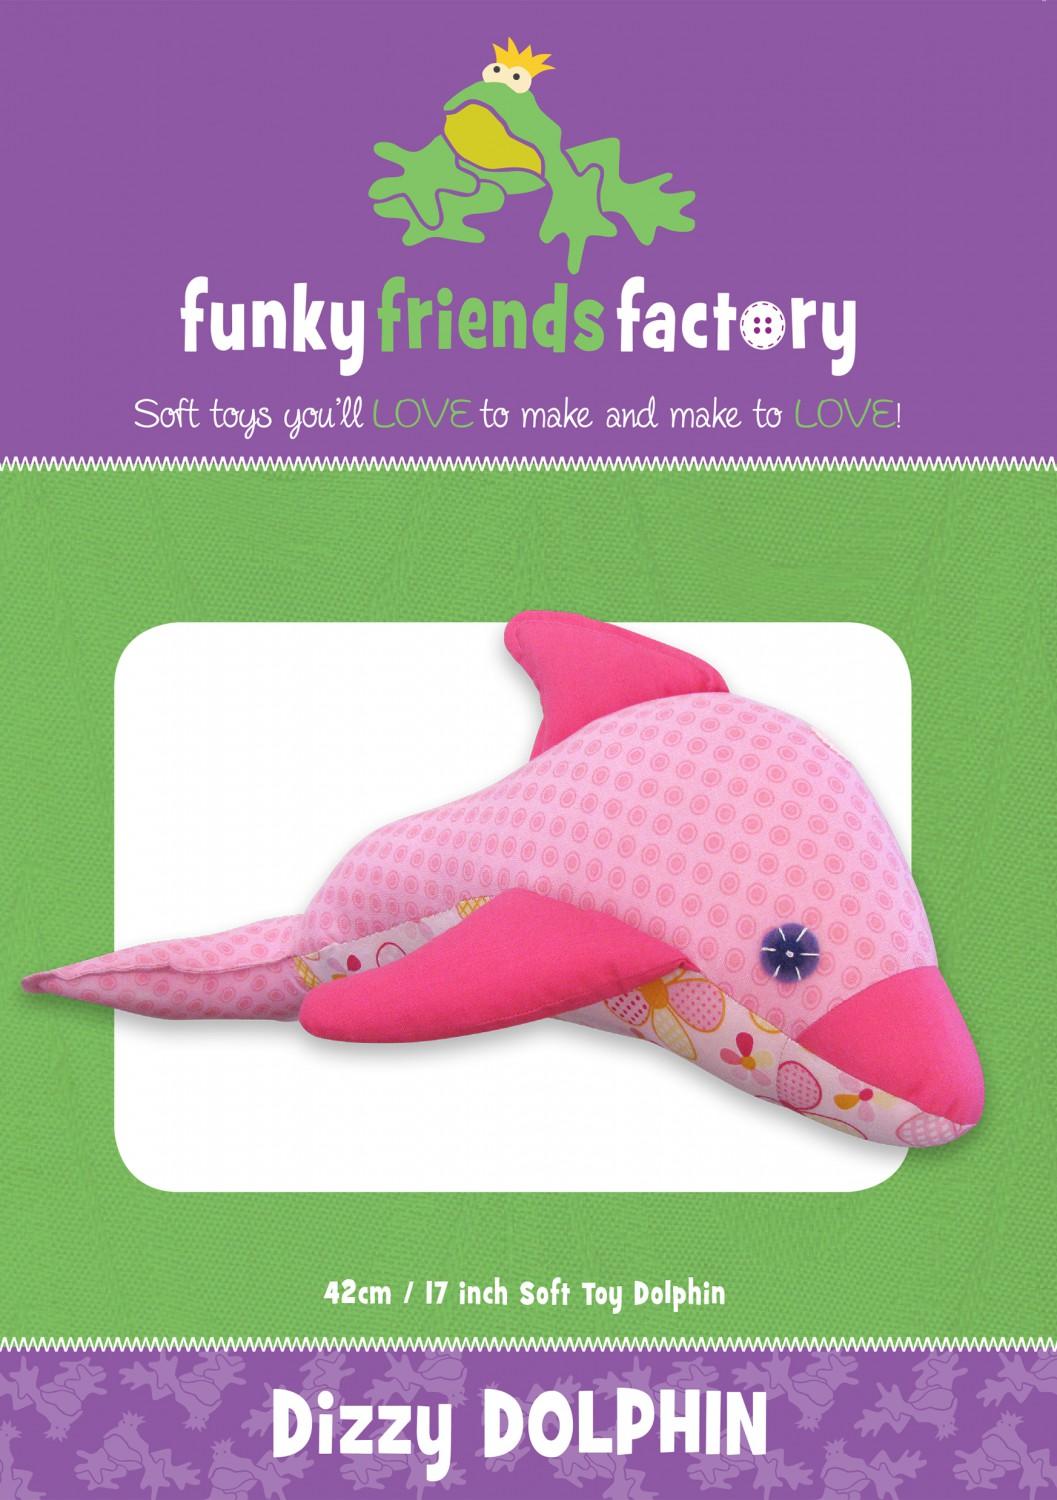 Dizzy Dolphin   Funky Friends Factory